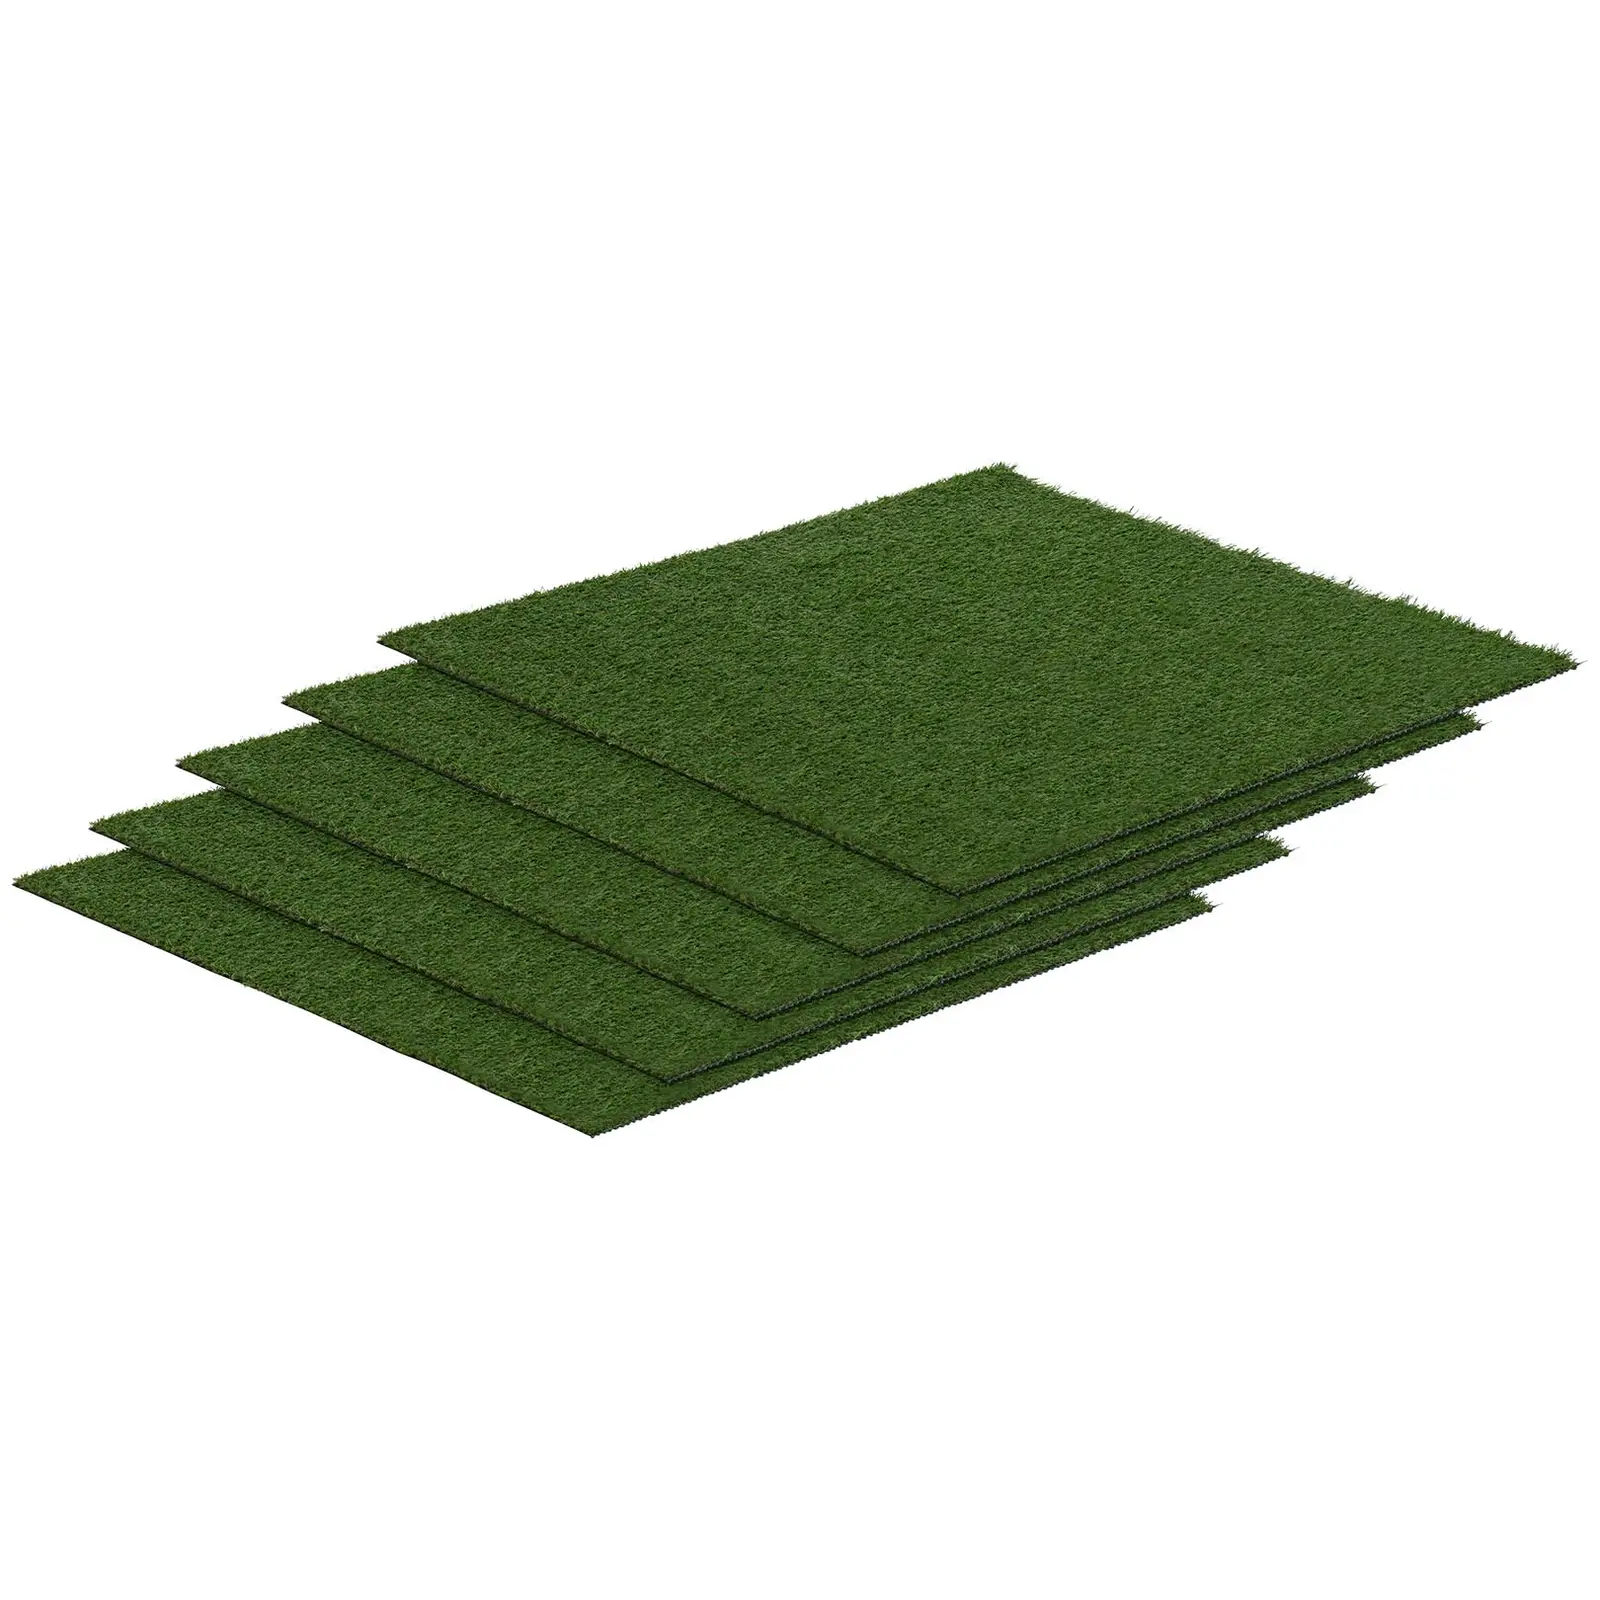 Sztuczna trawa - zestaw 5 sztuk - 100 x 100 cm - wysokość: 20 mm - szybkość ściegu: 13/10 cm - odporność na promieniowanie UV